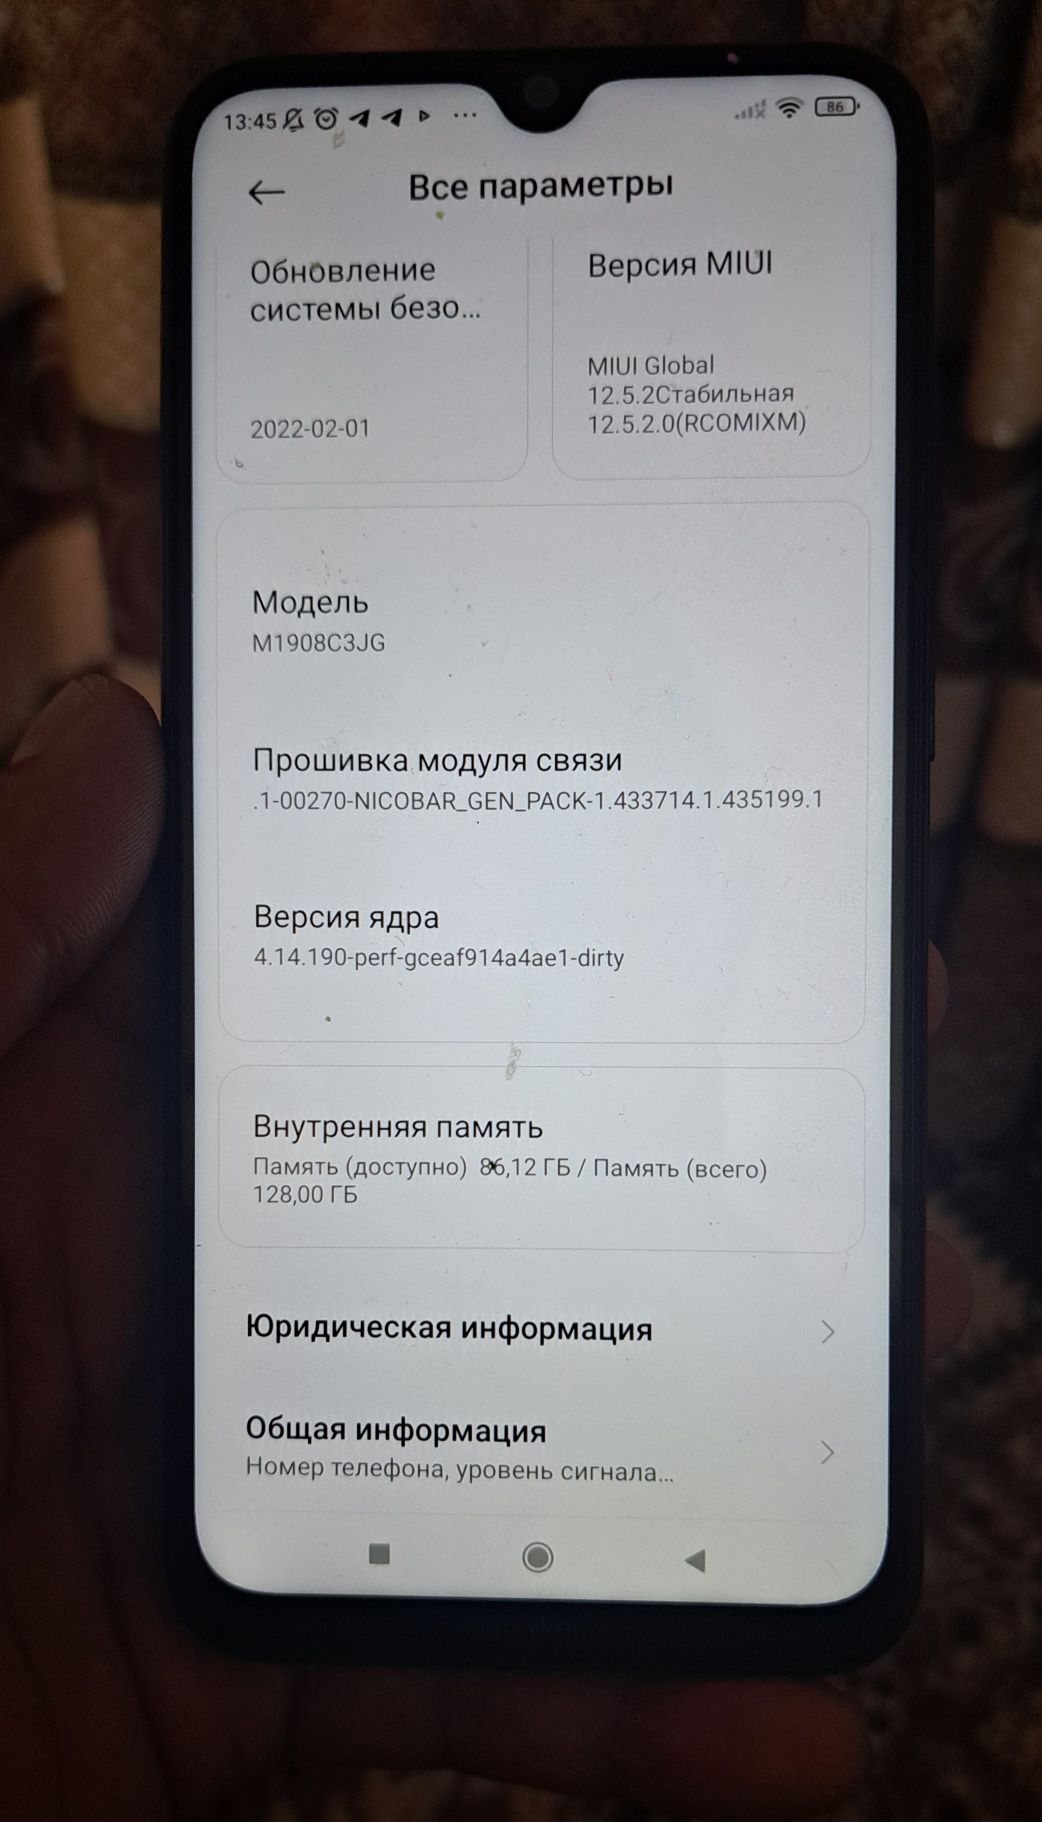 Redmi Note 8 сотилпди состояние норм